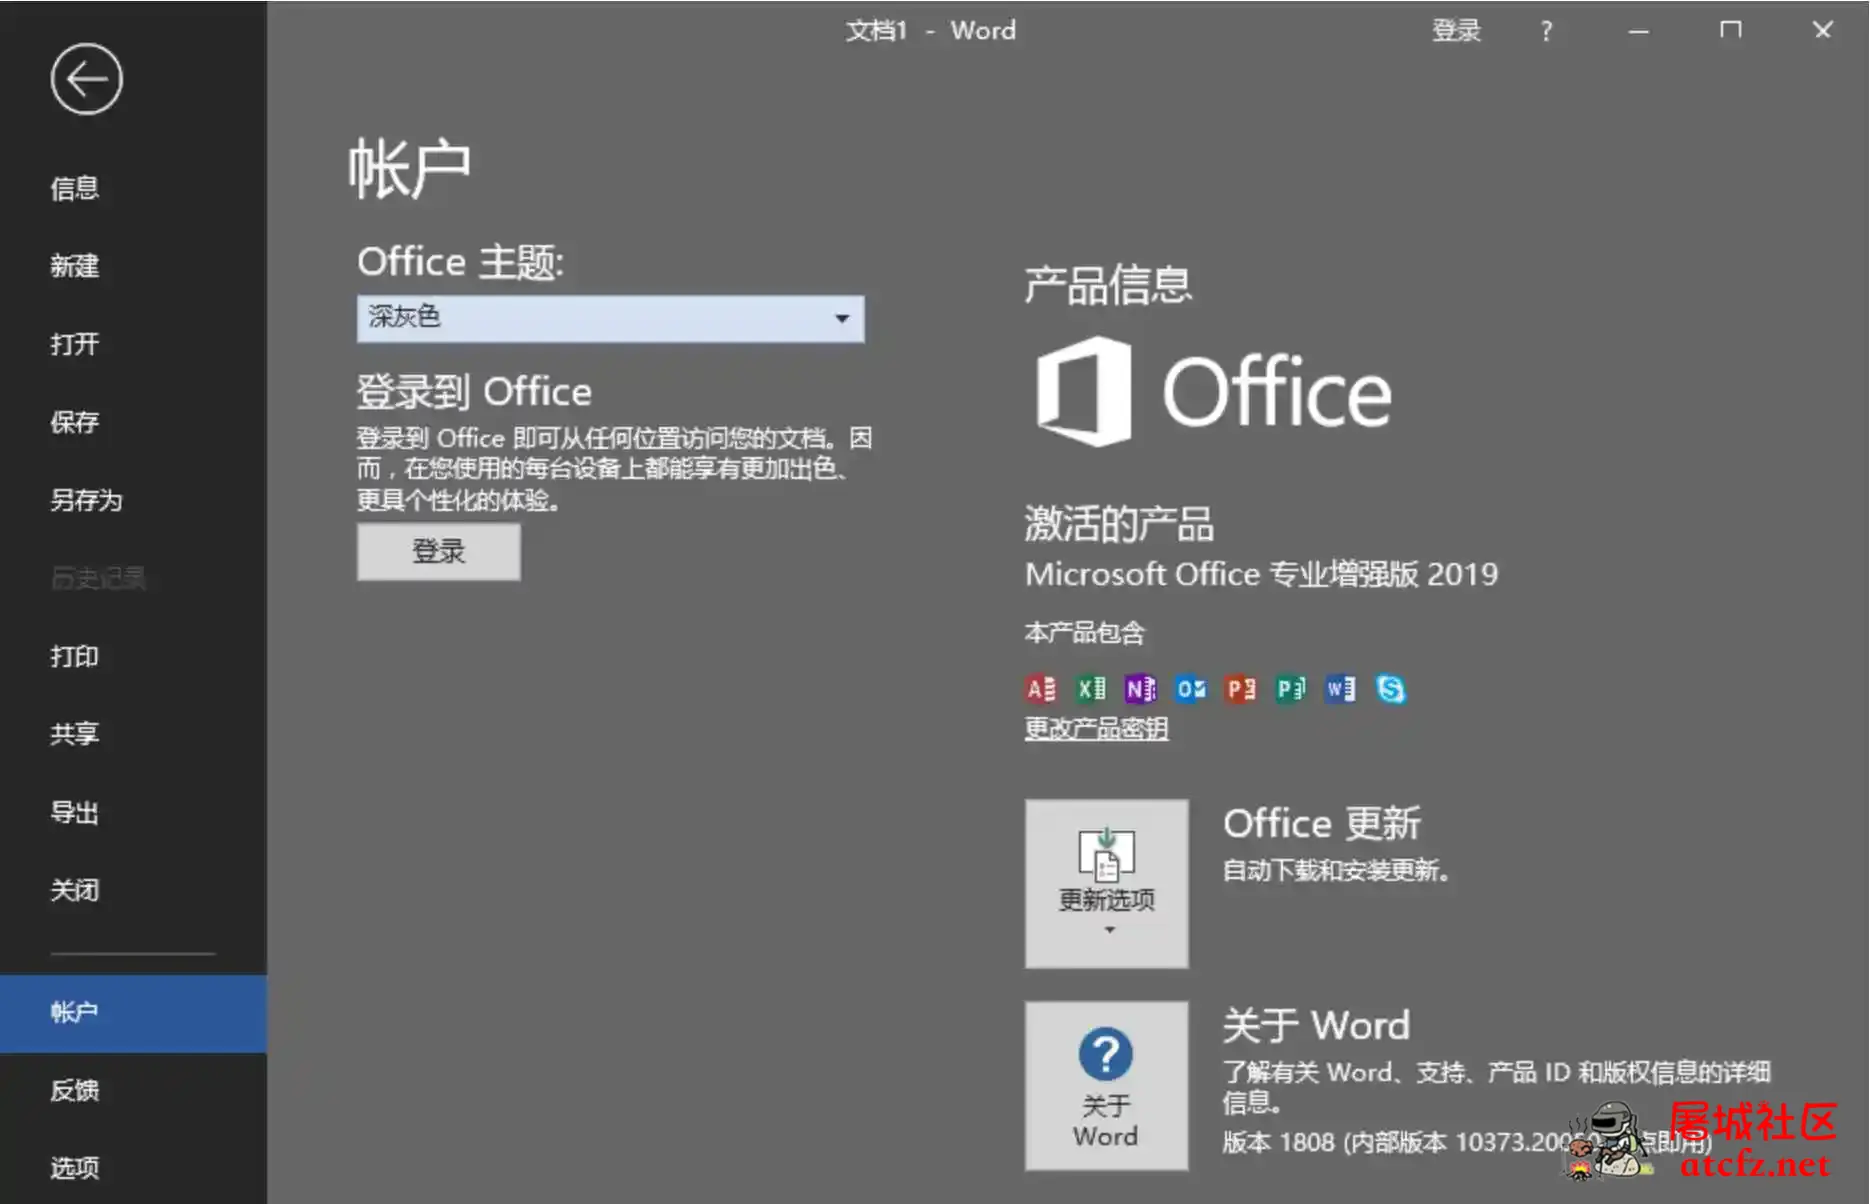 微软Office2019批量授权版批量授权商业版工具 屠城辅助网www.tcfz1.com8892